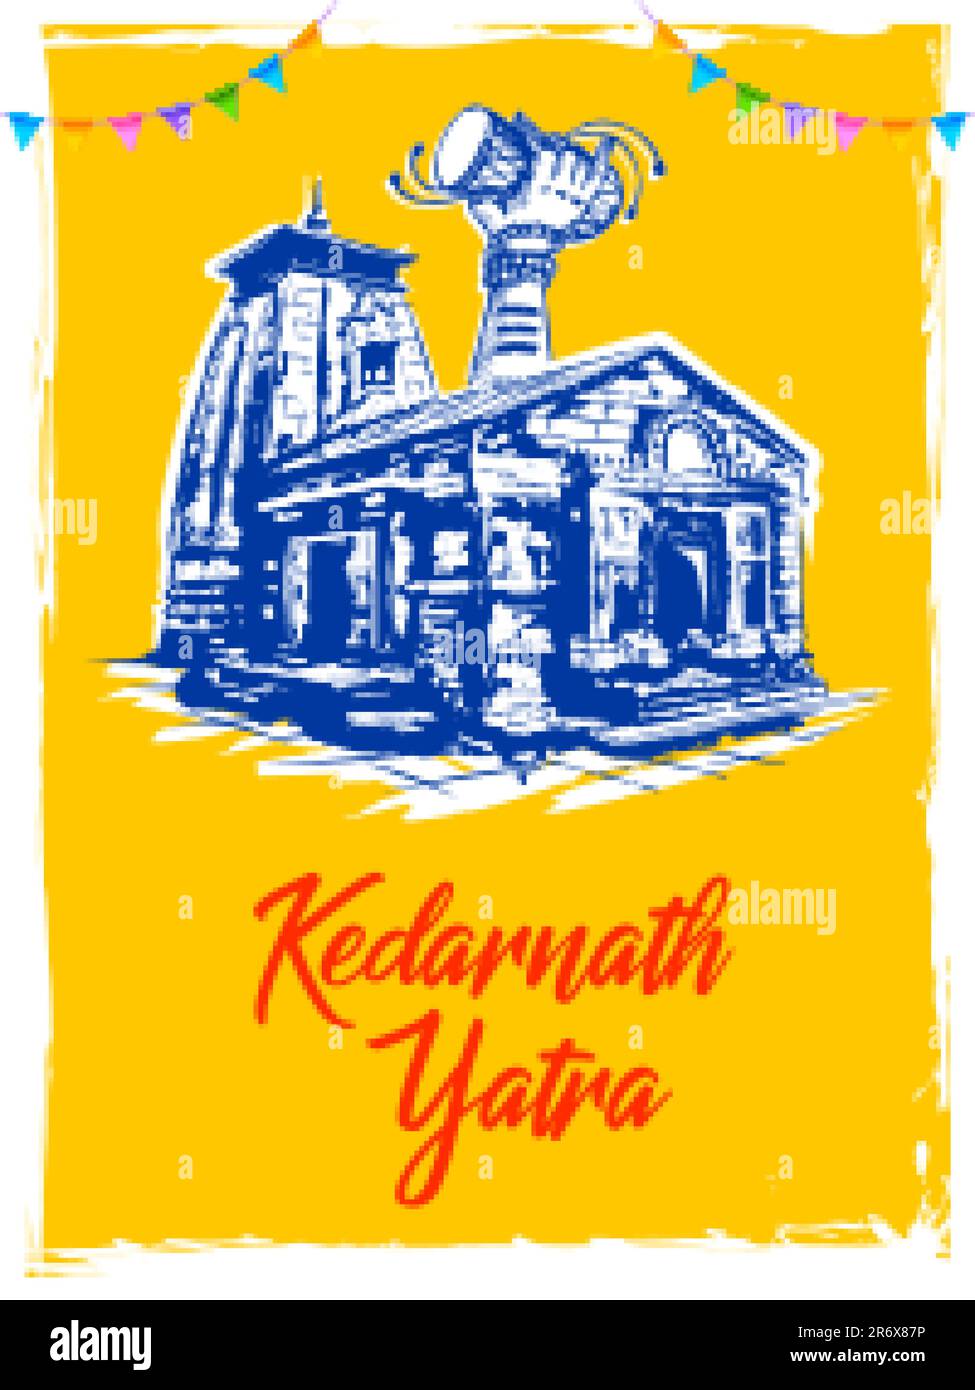 Kedarnath Mandir Hindu Tempel von Lord Shiva in Uttarakhand Indien für Kedarnath Yatra Stock Vektor